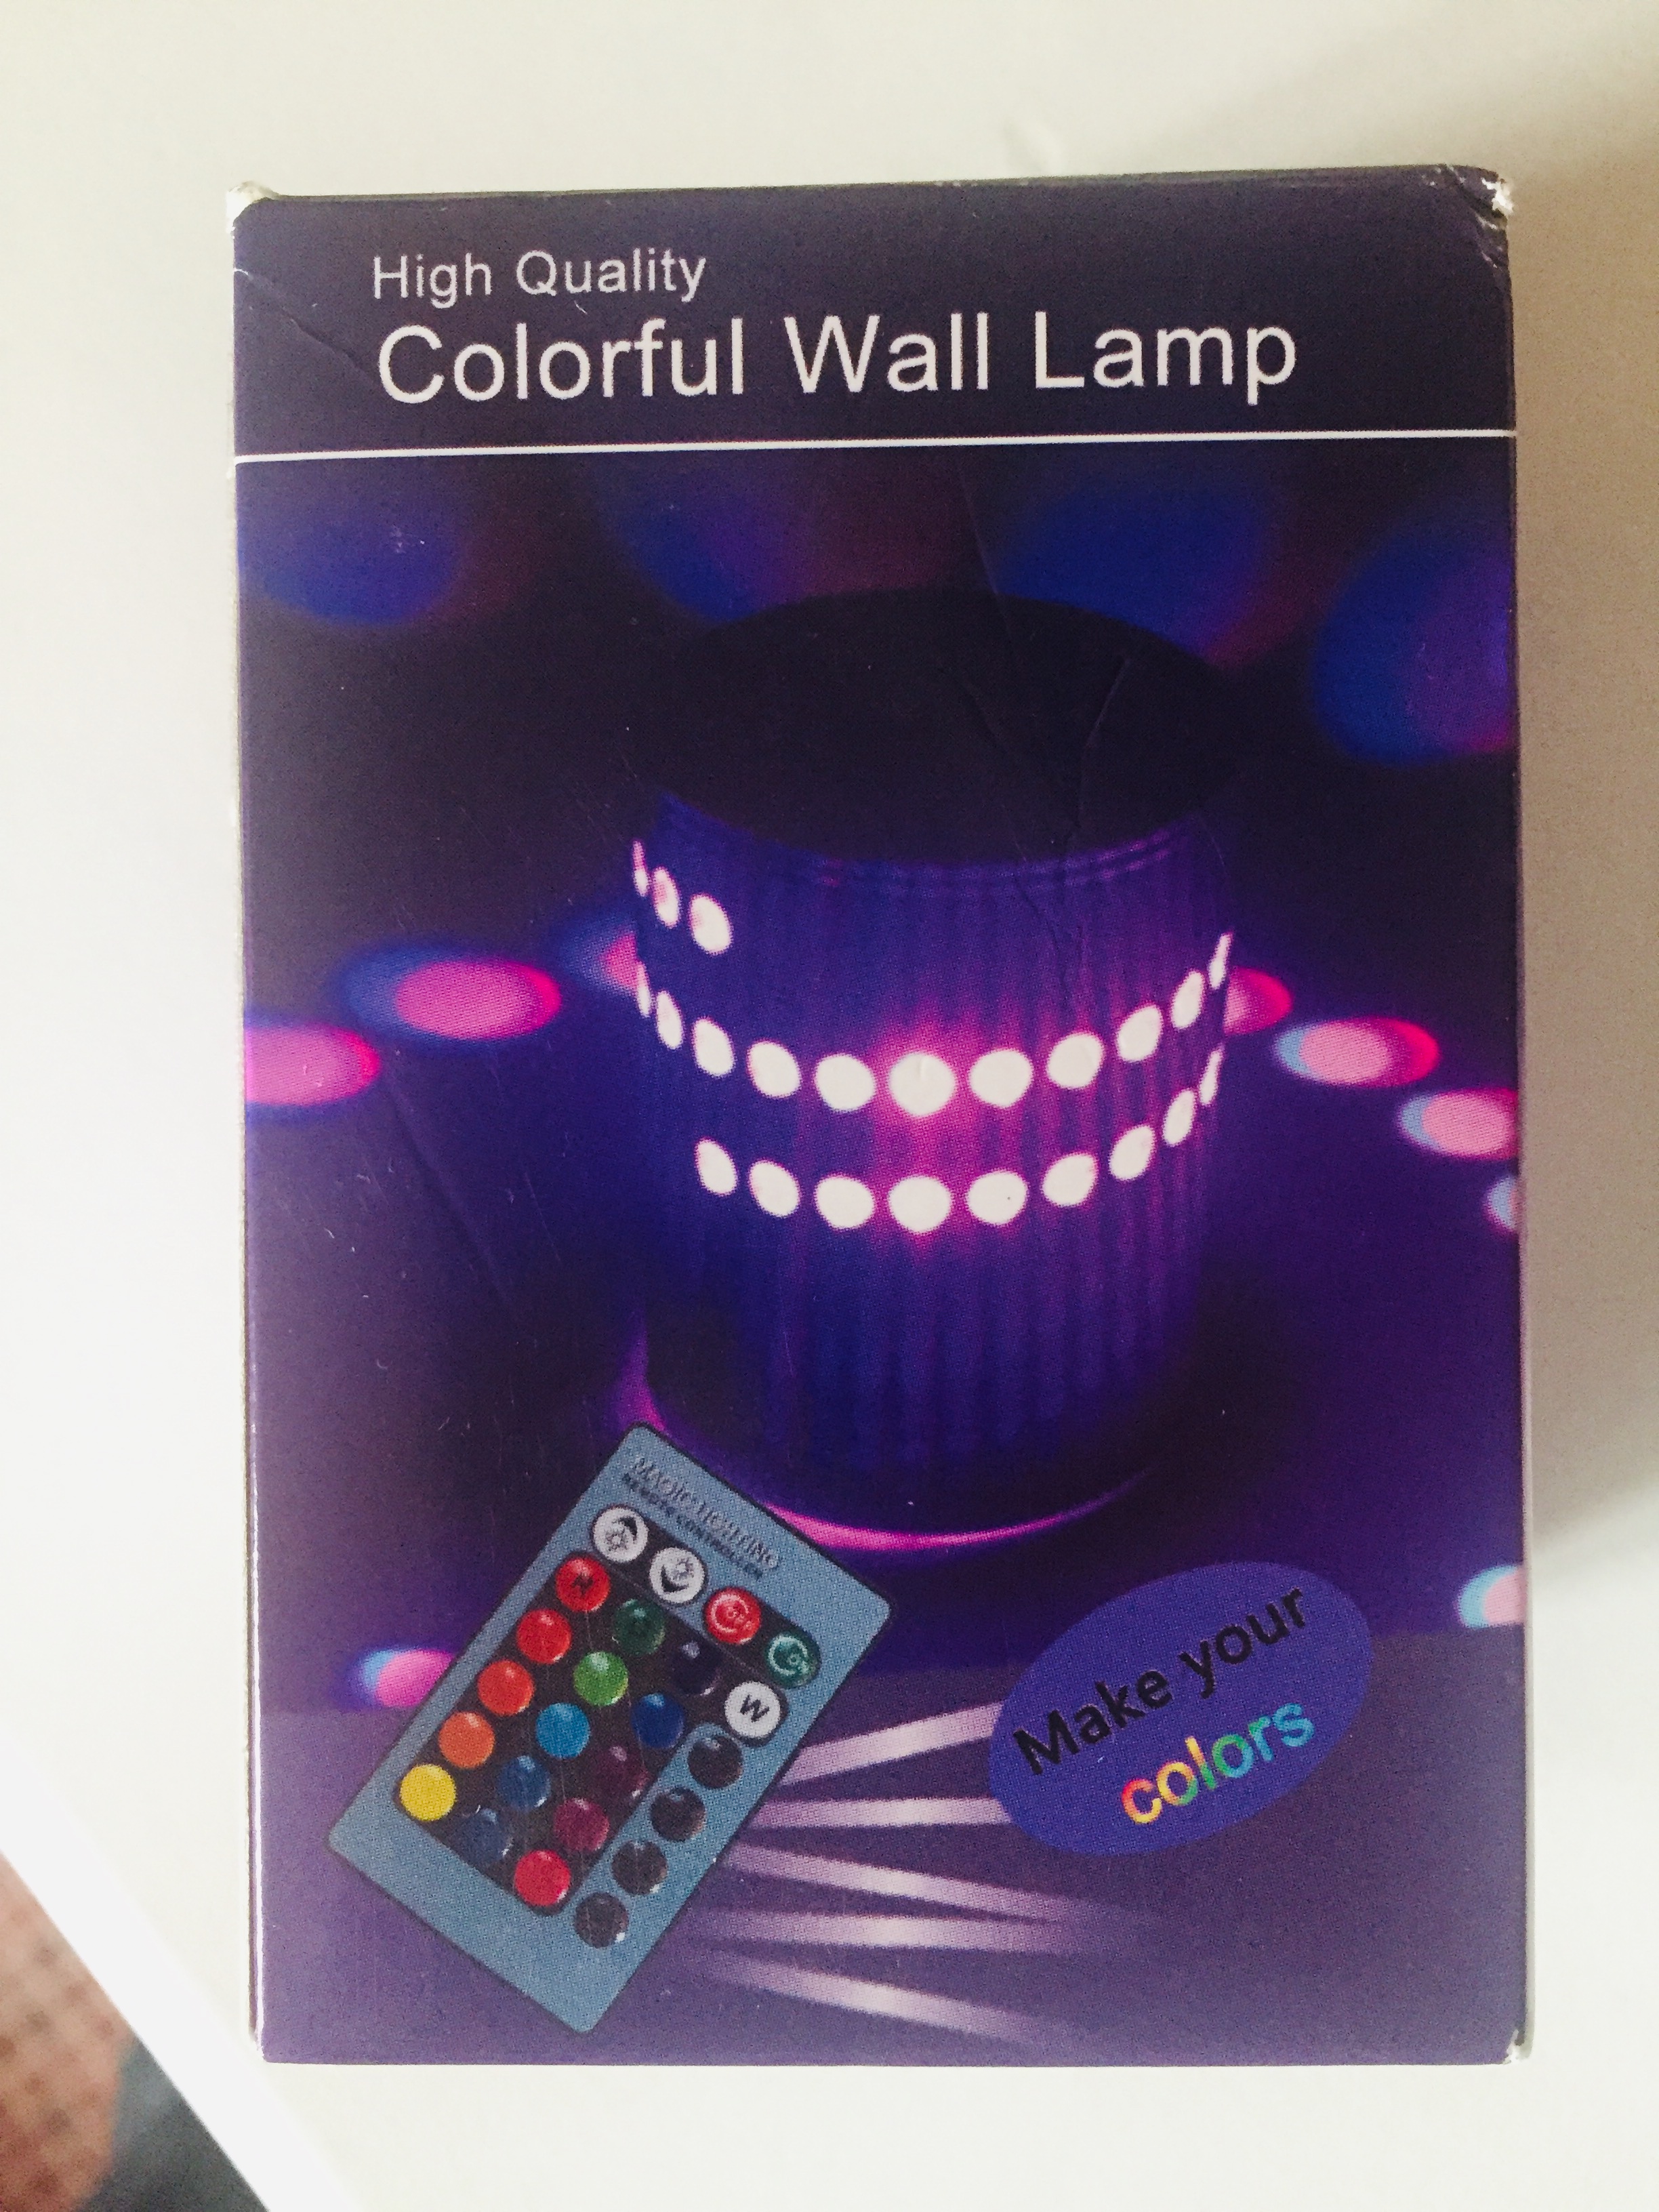 LED Spiral wall lights B1374ADB-09A7-4B56-A6D4-D2D6519741E7 - EletriciansForums.net